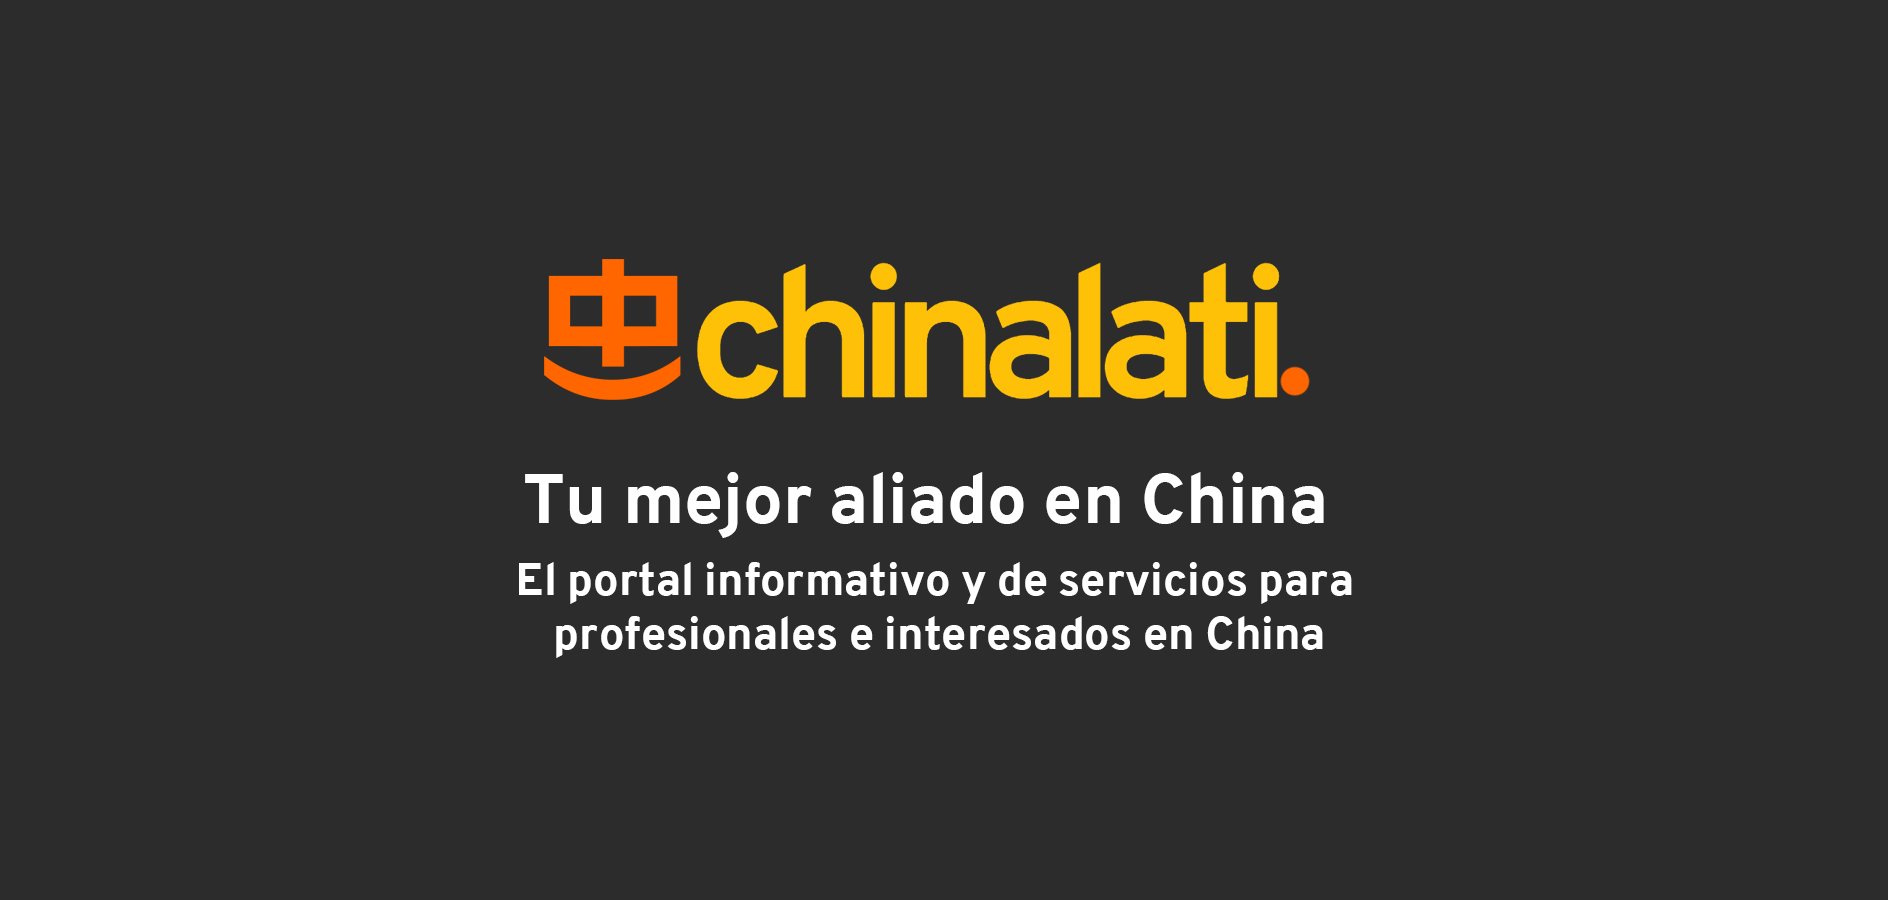 (c) Chinalati.com